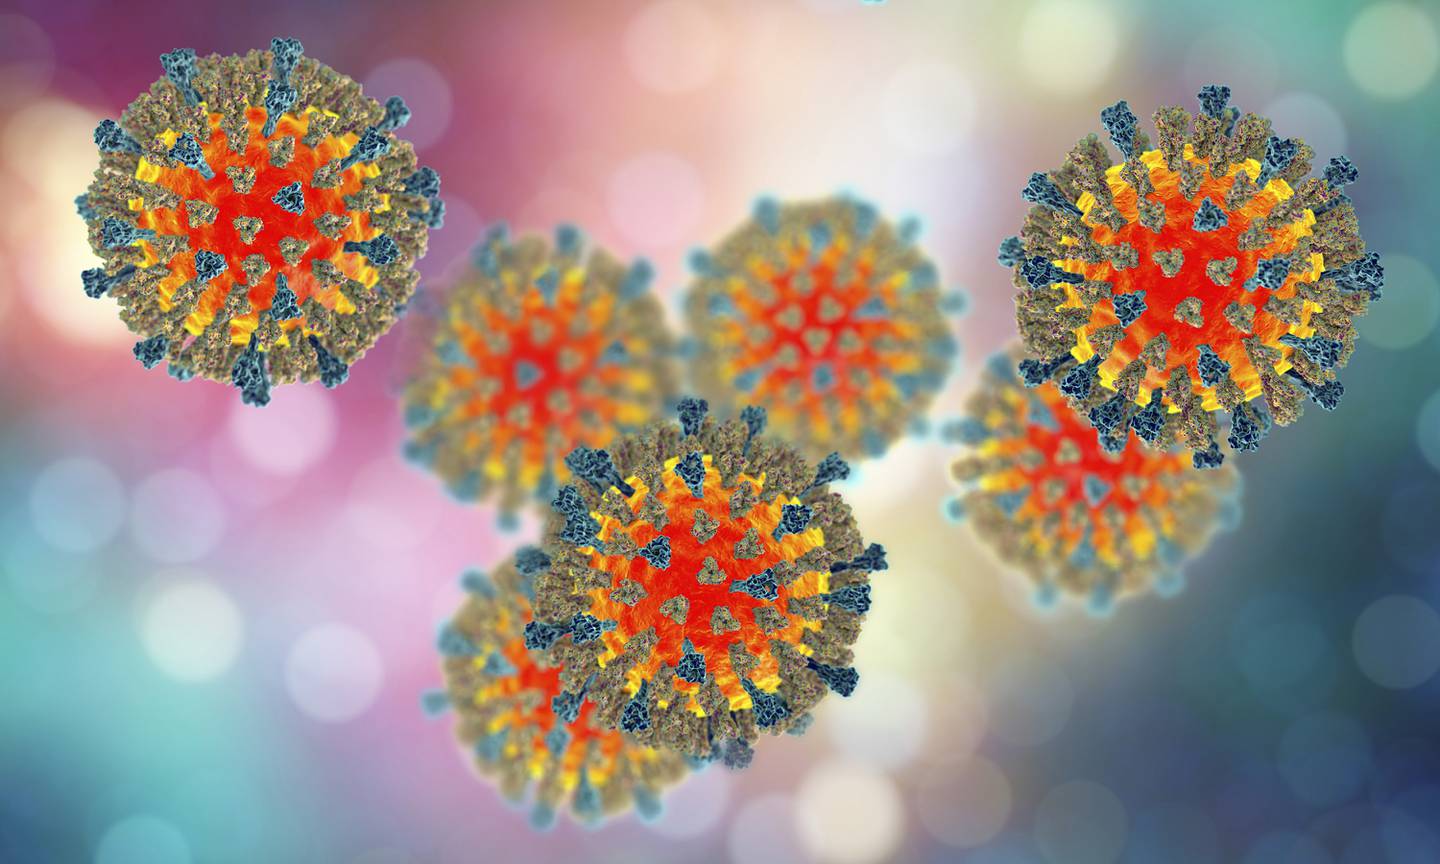 El sarampión es una enfermedad prevenible por vacunación.

Imagen: Shutterstock